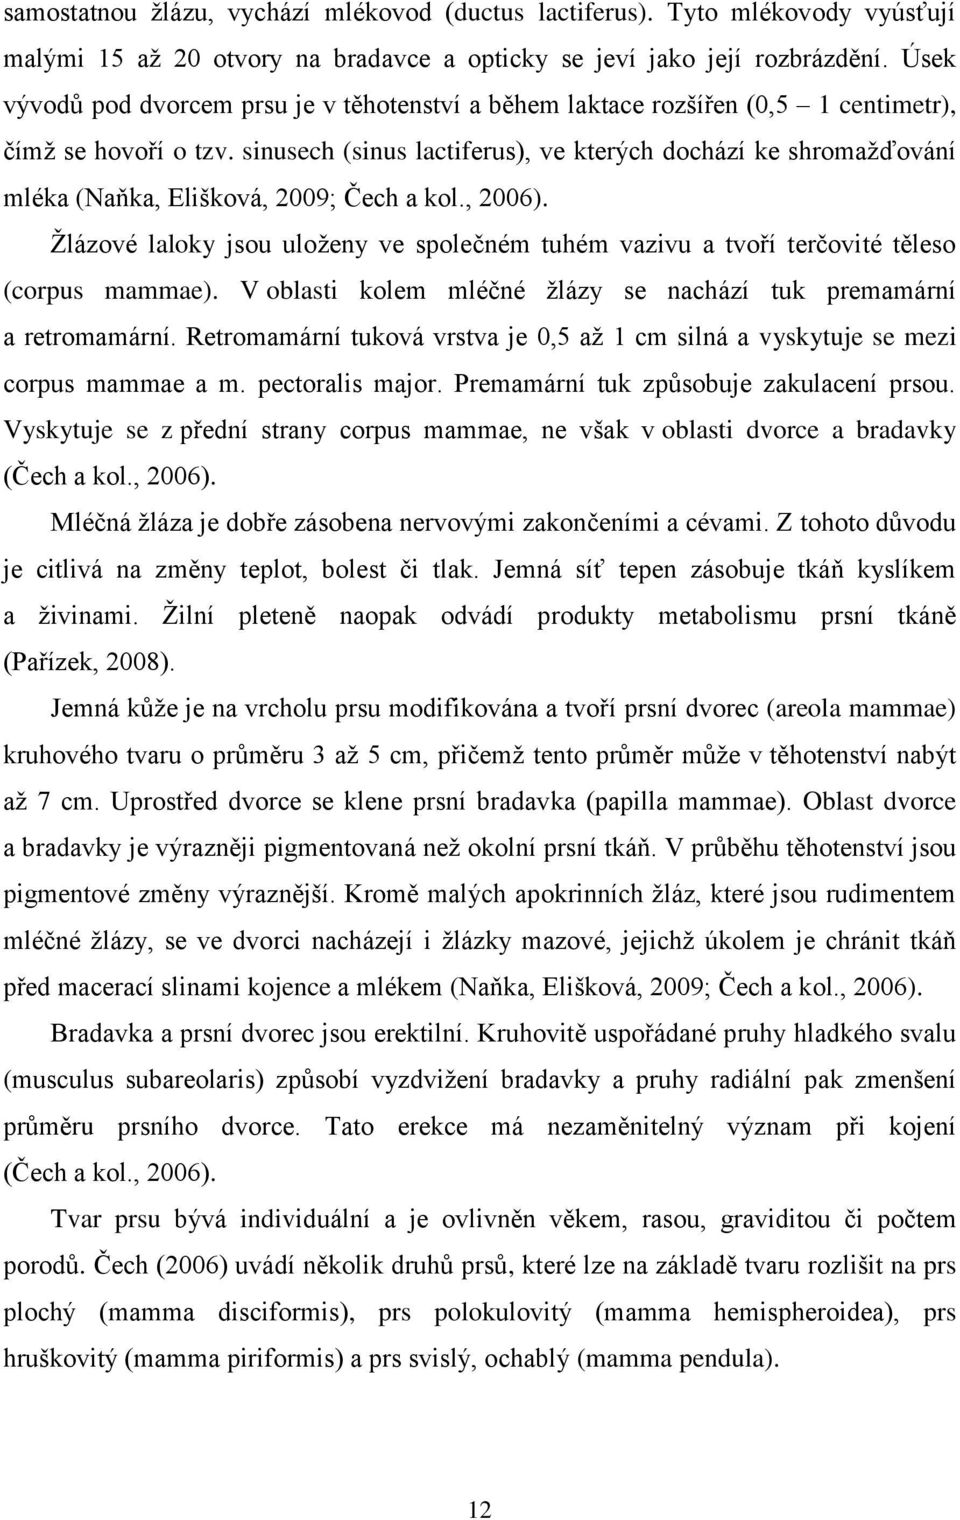 sinusech (sinus lactiferus), ve kterých dochází ke shromažďování mléka (Naňka, Elišková, 2009; Čech a kol., 2006).